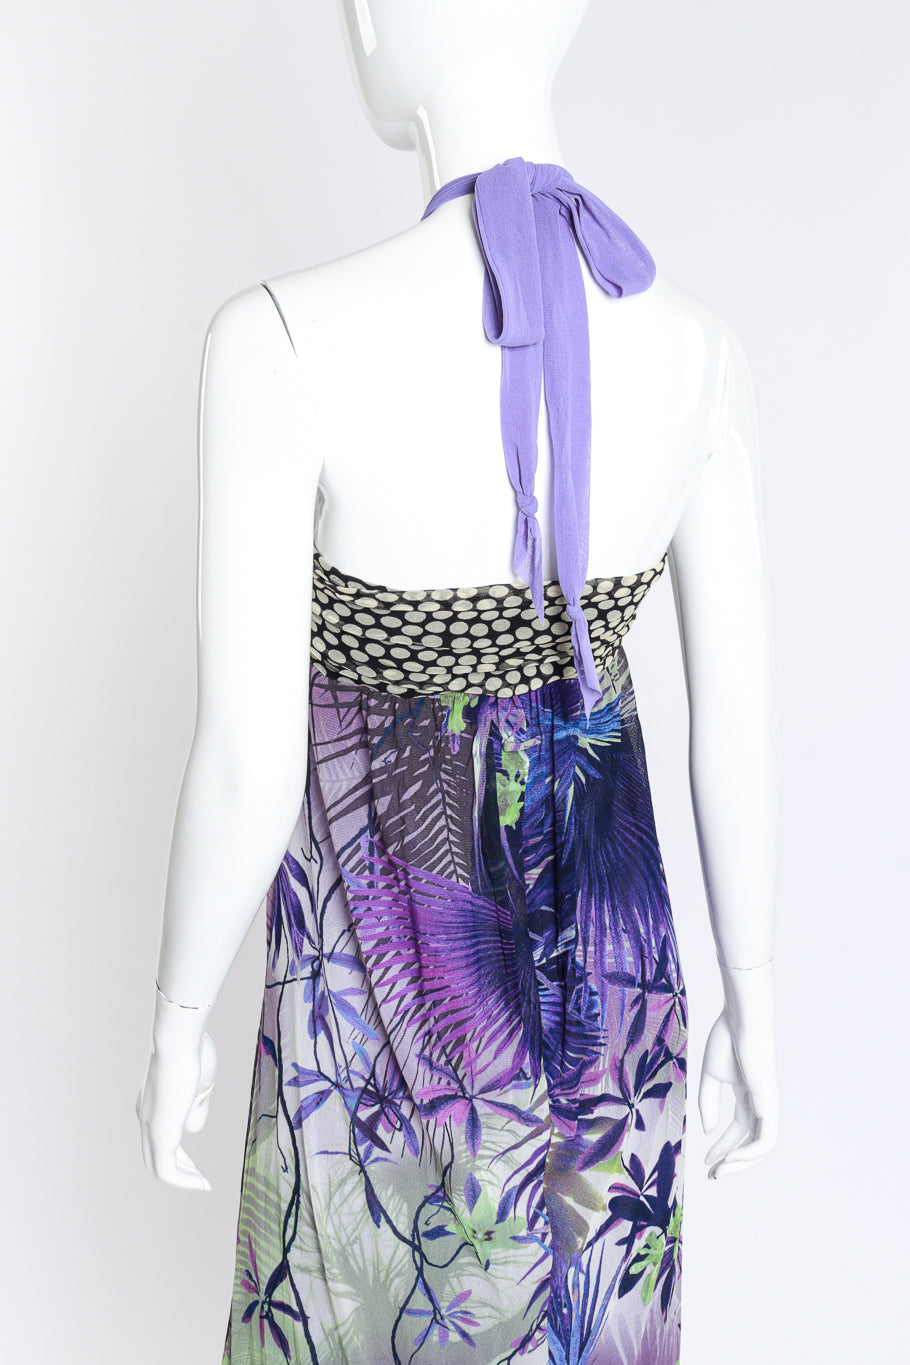 Gaultier 2009 P&P Maxi Dress back on mannequin @RECESS LA